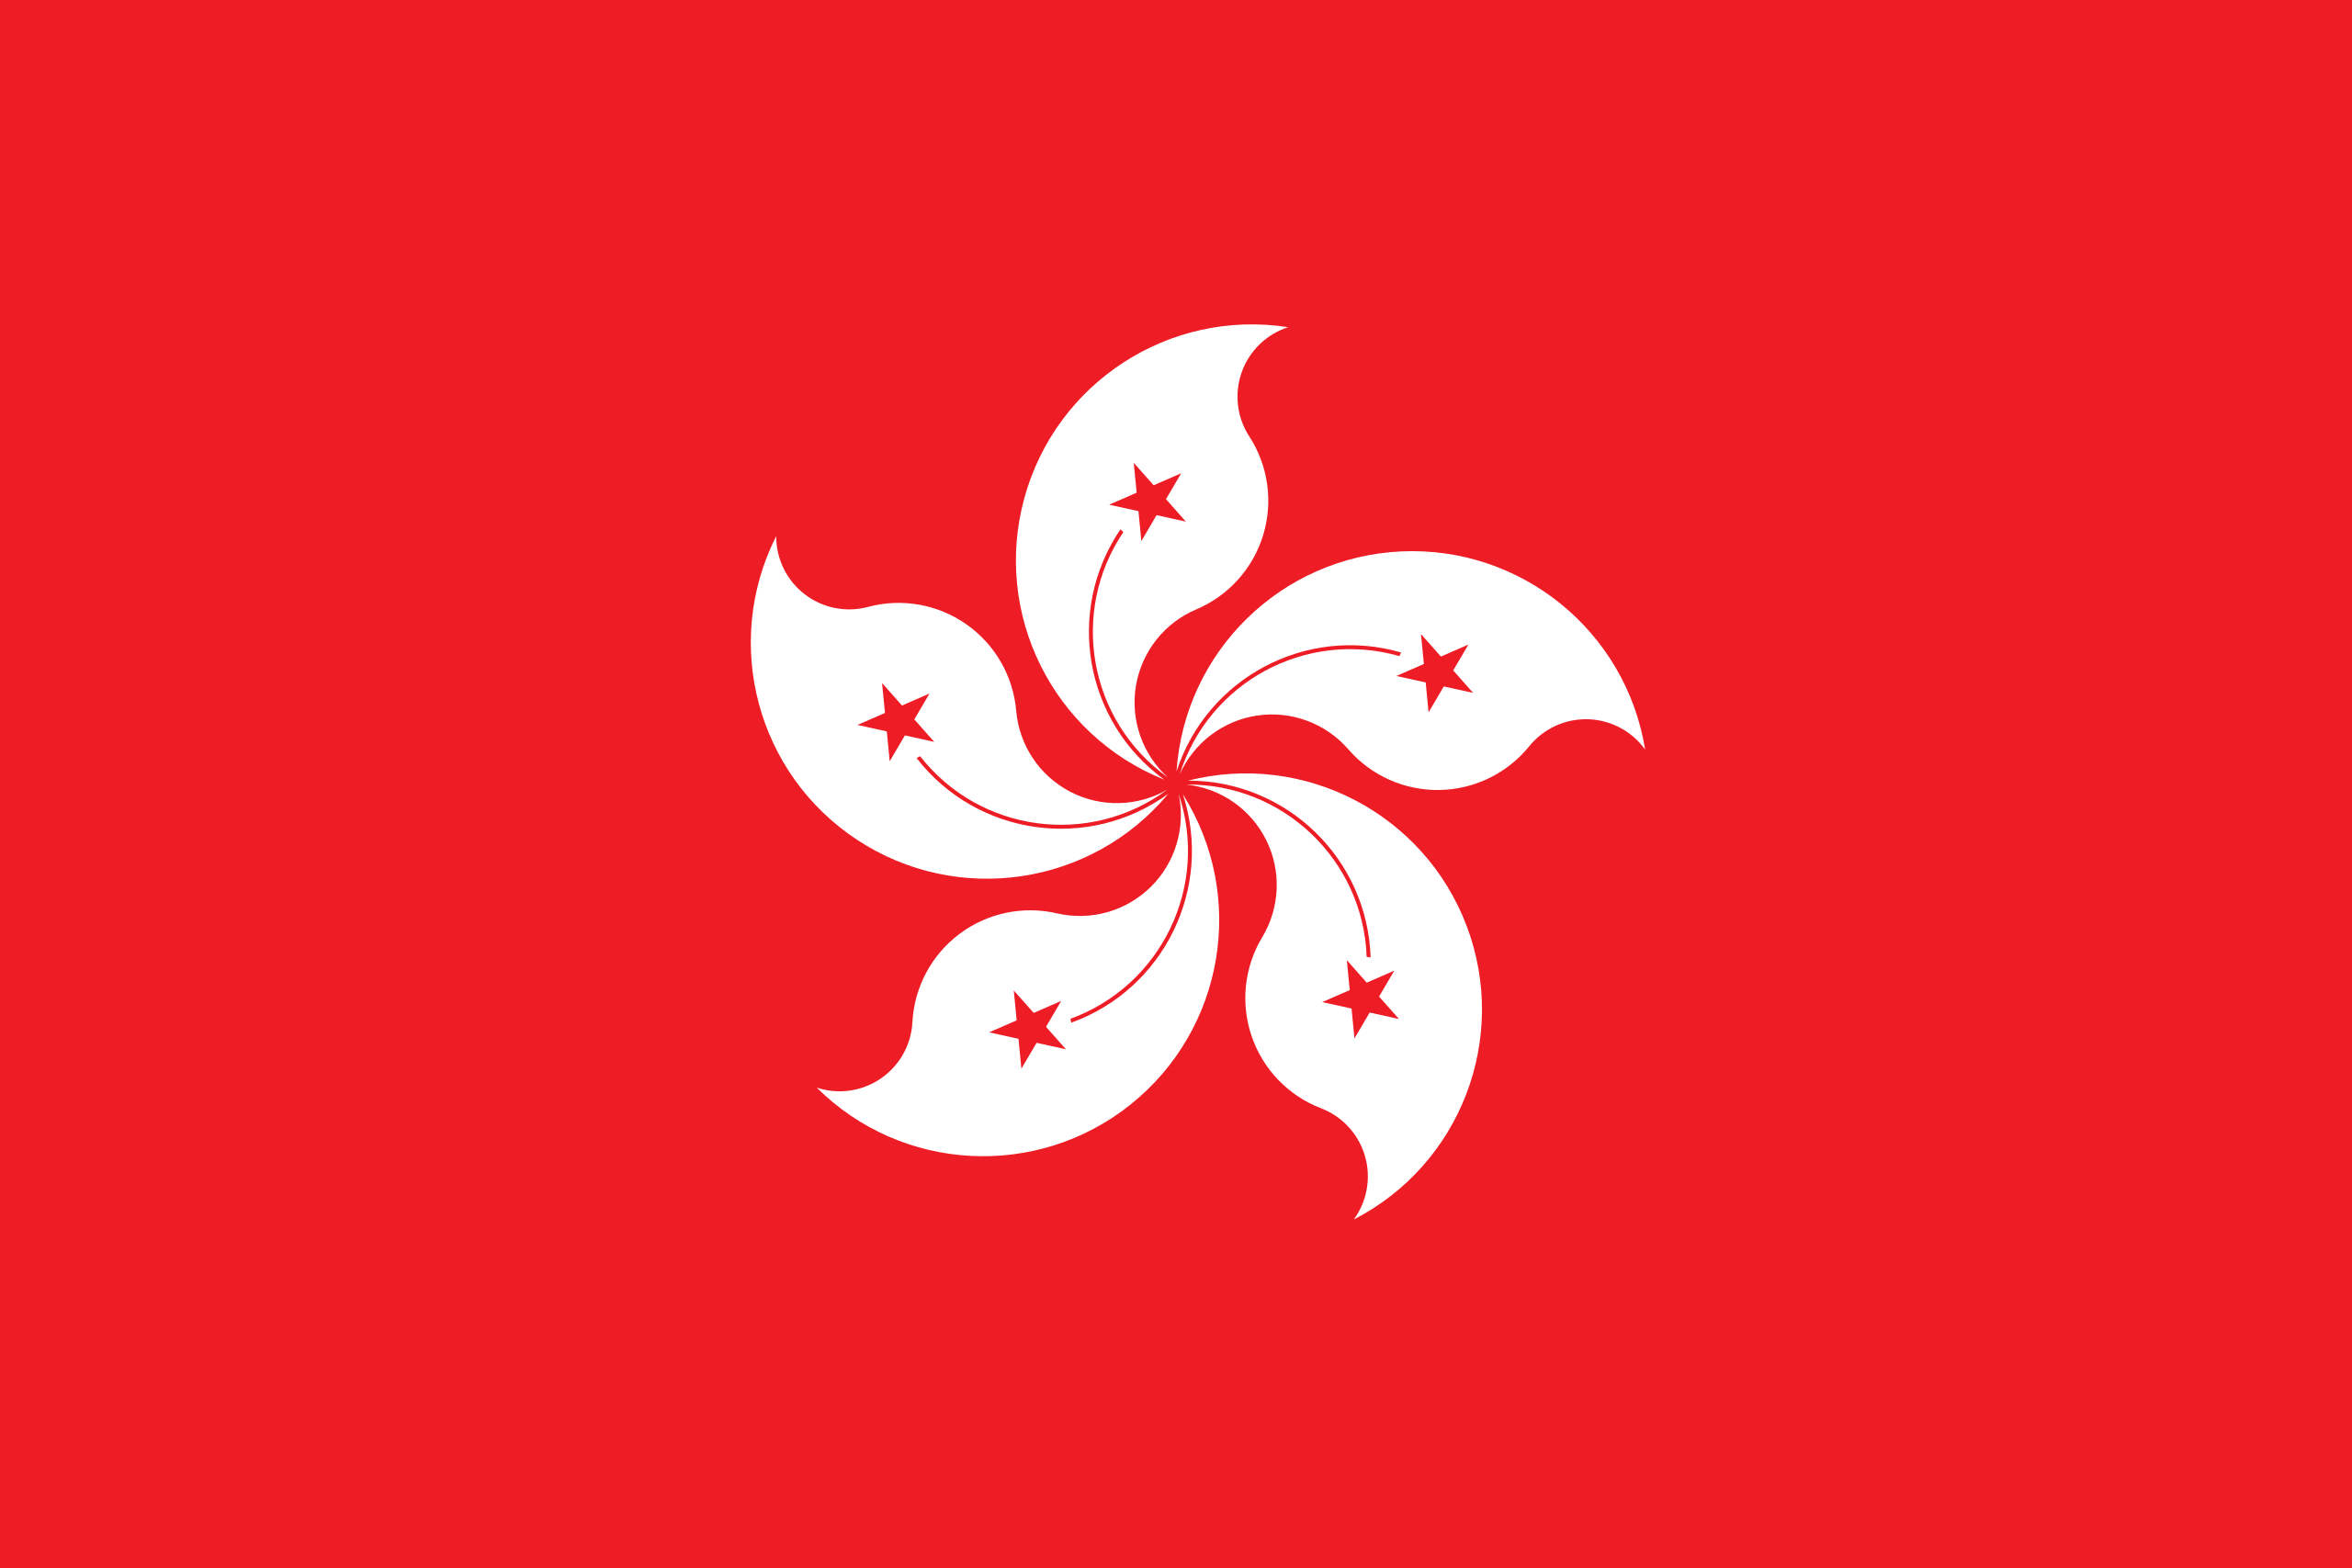 Hong Kong Students